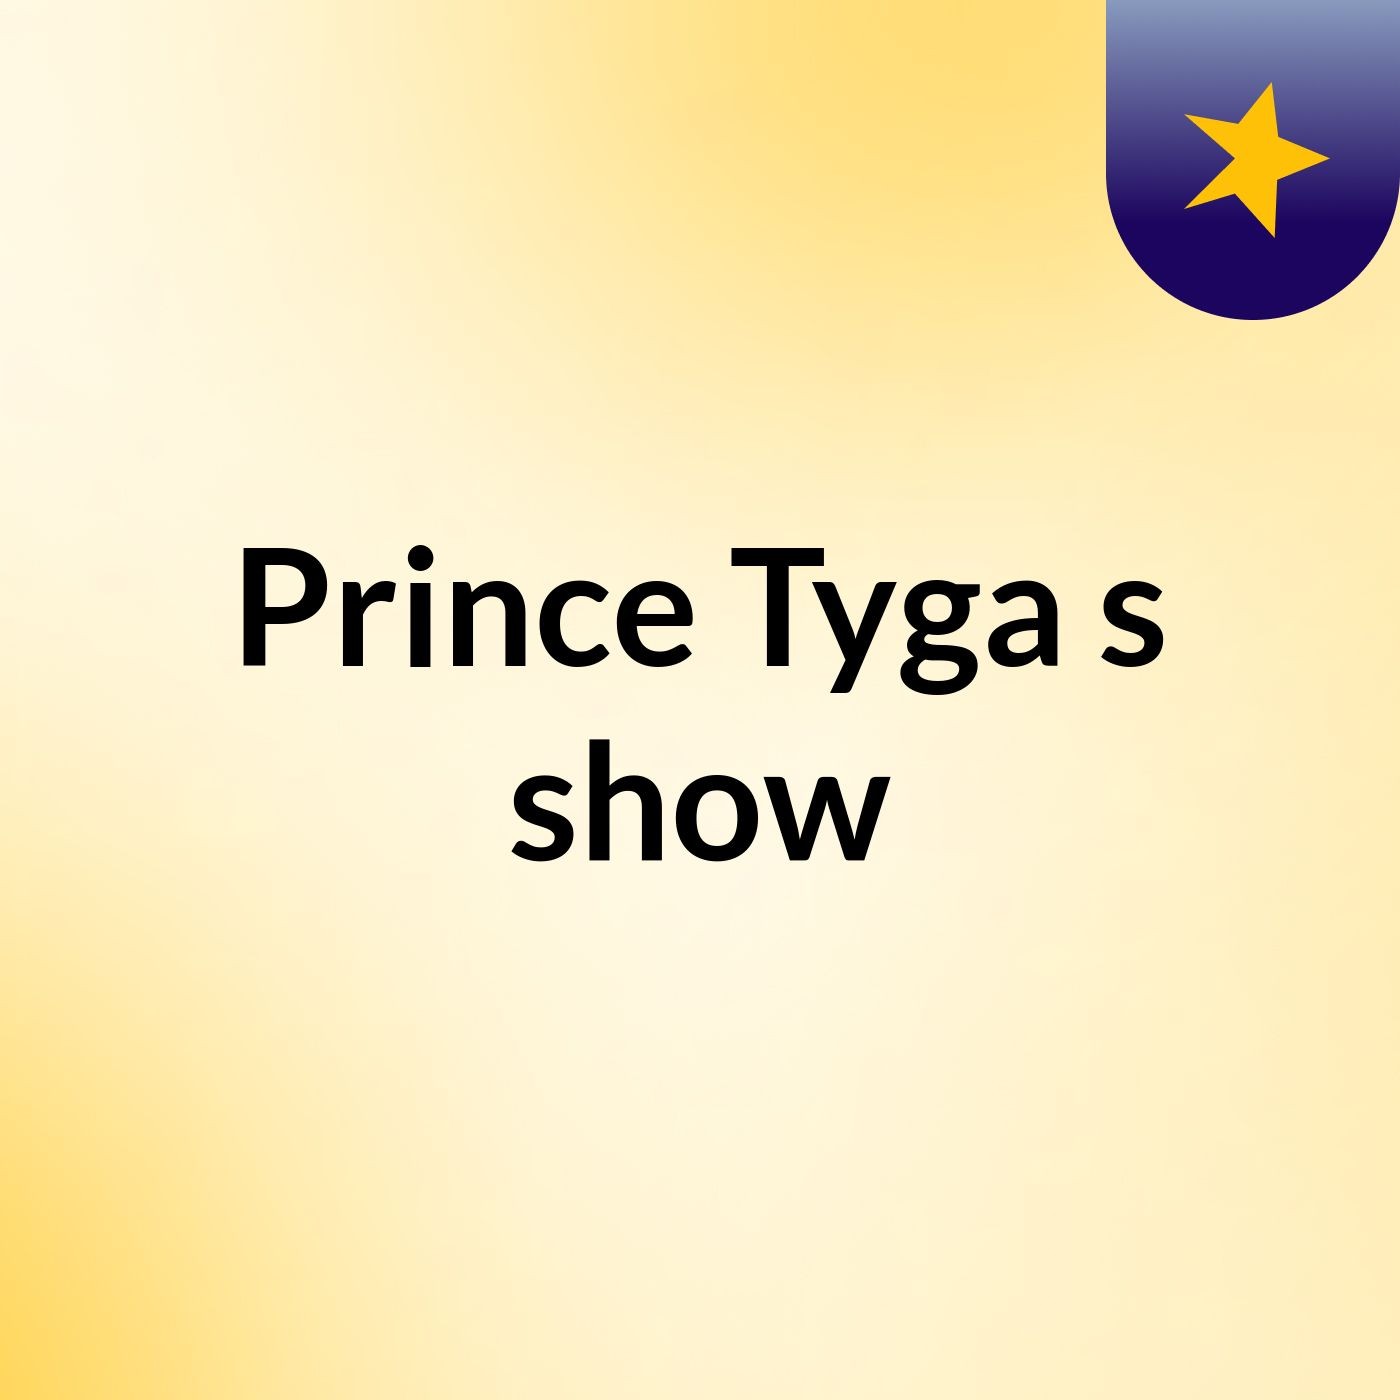 Prince Tyga's show